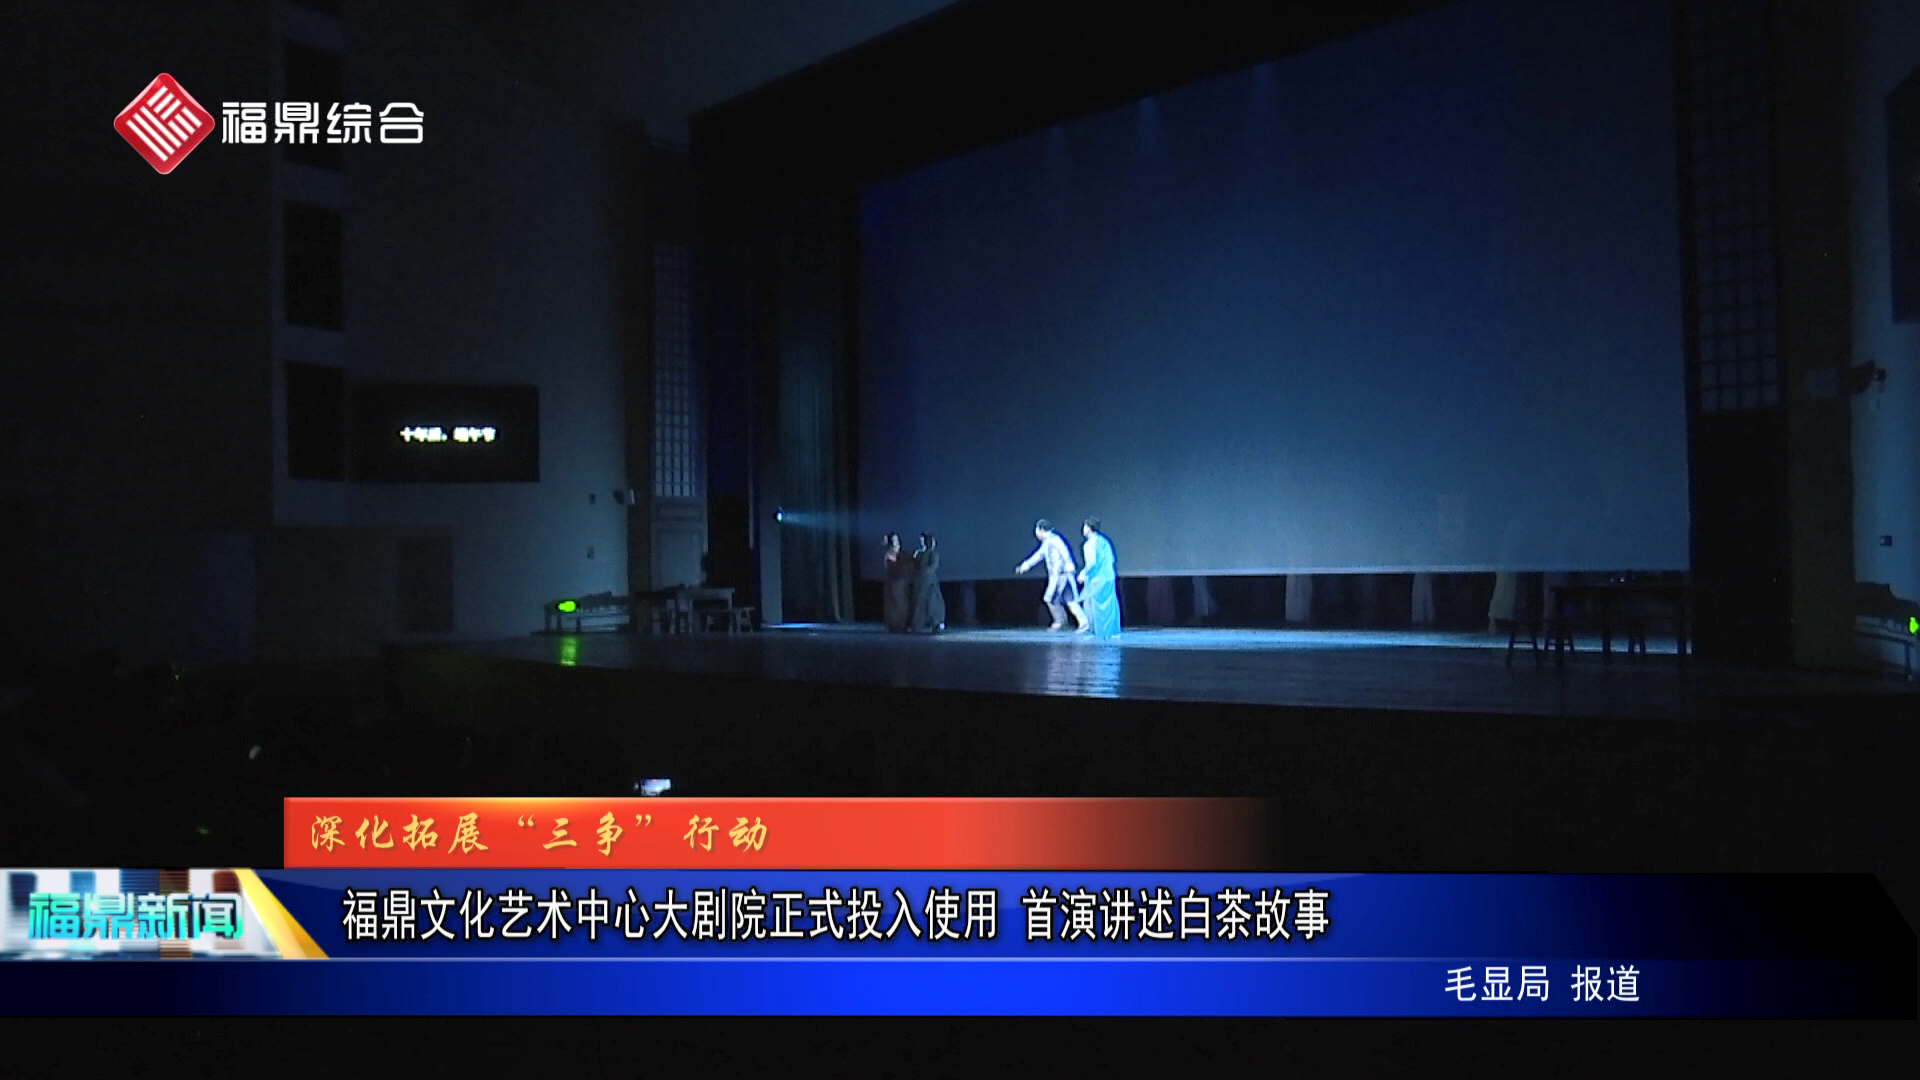 福鼎文化艺术中心大剧院正式投入使用 首演讲述白茶故事